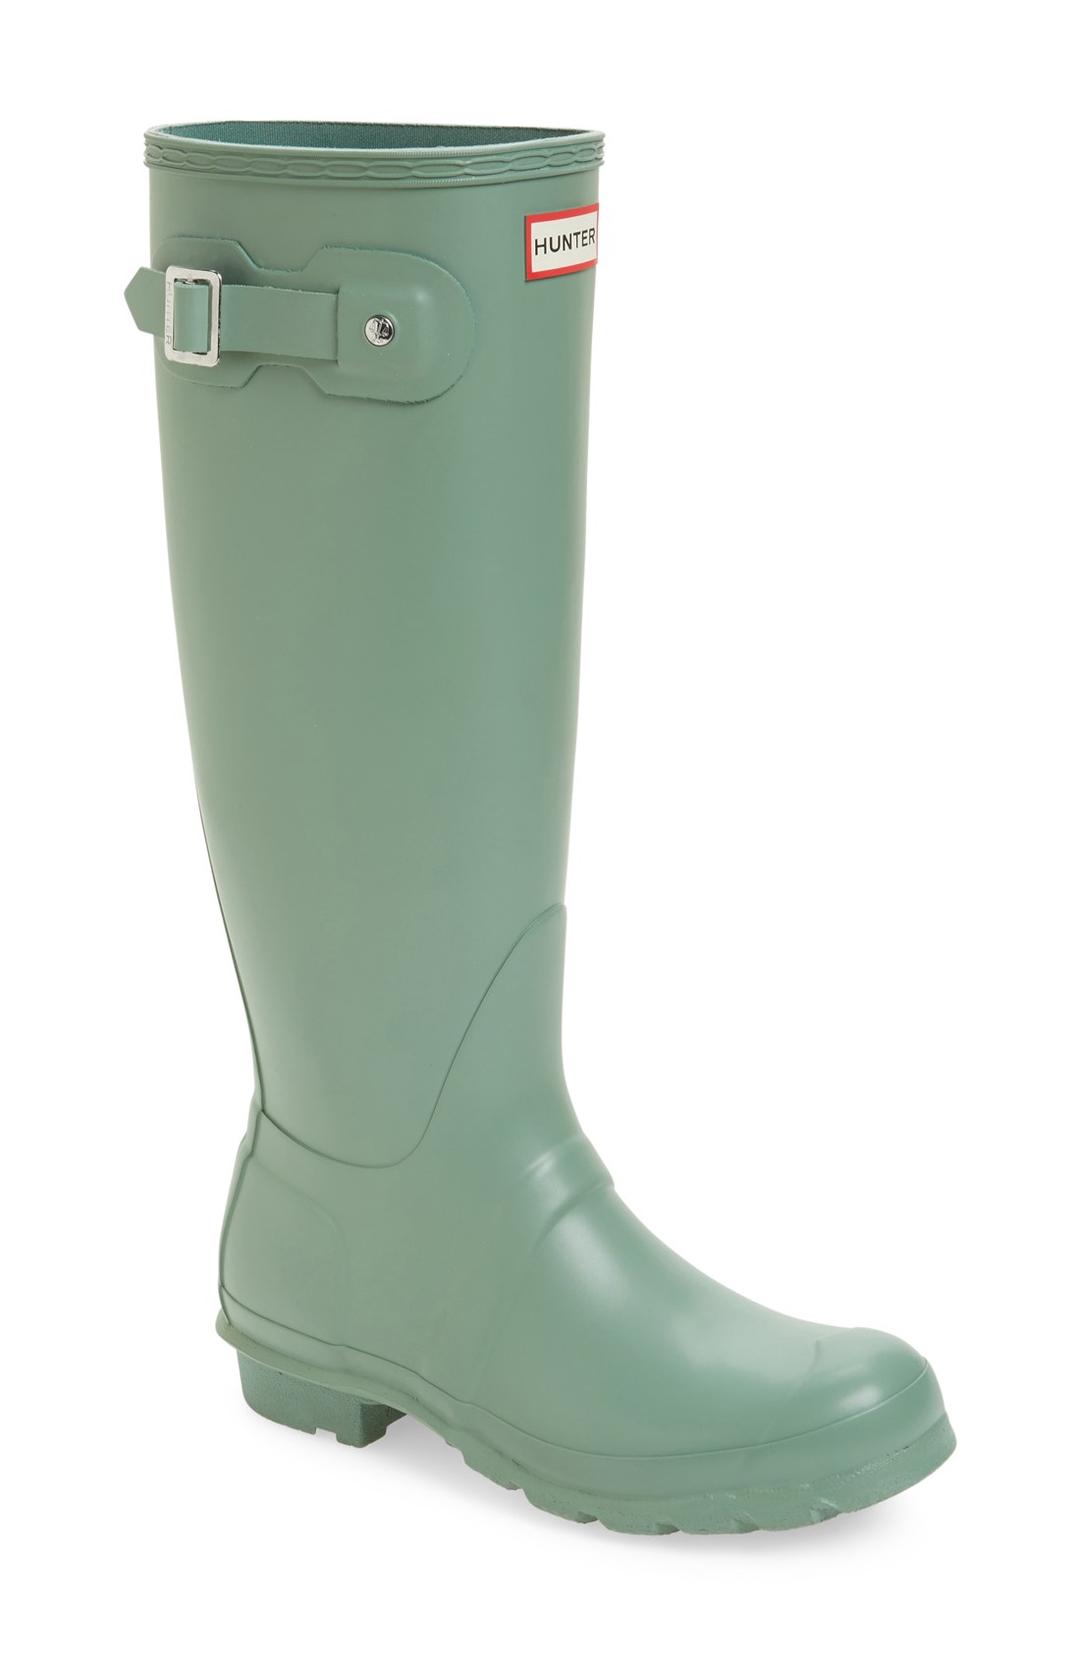 rain boots for big calves